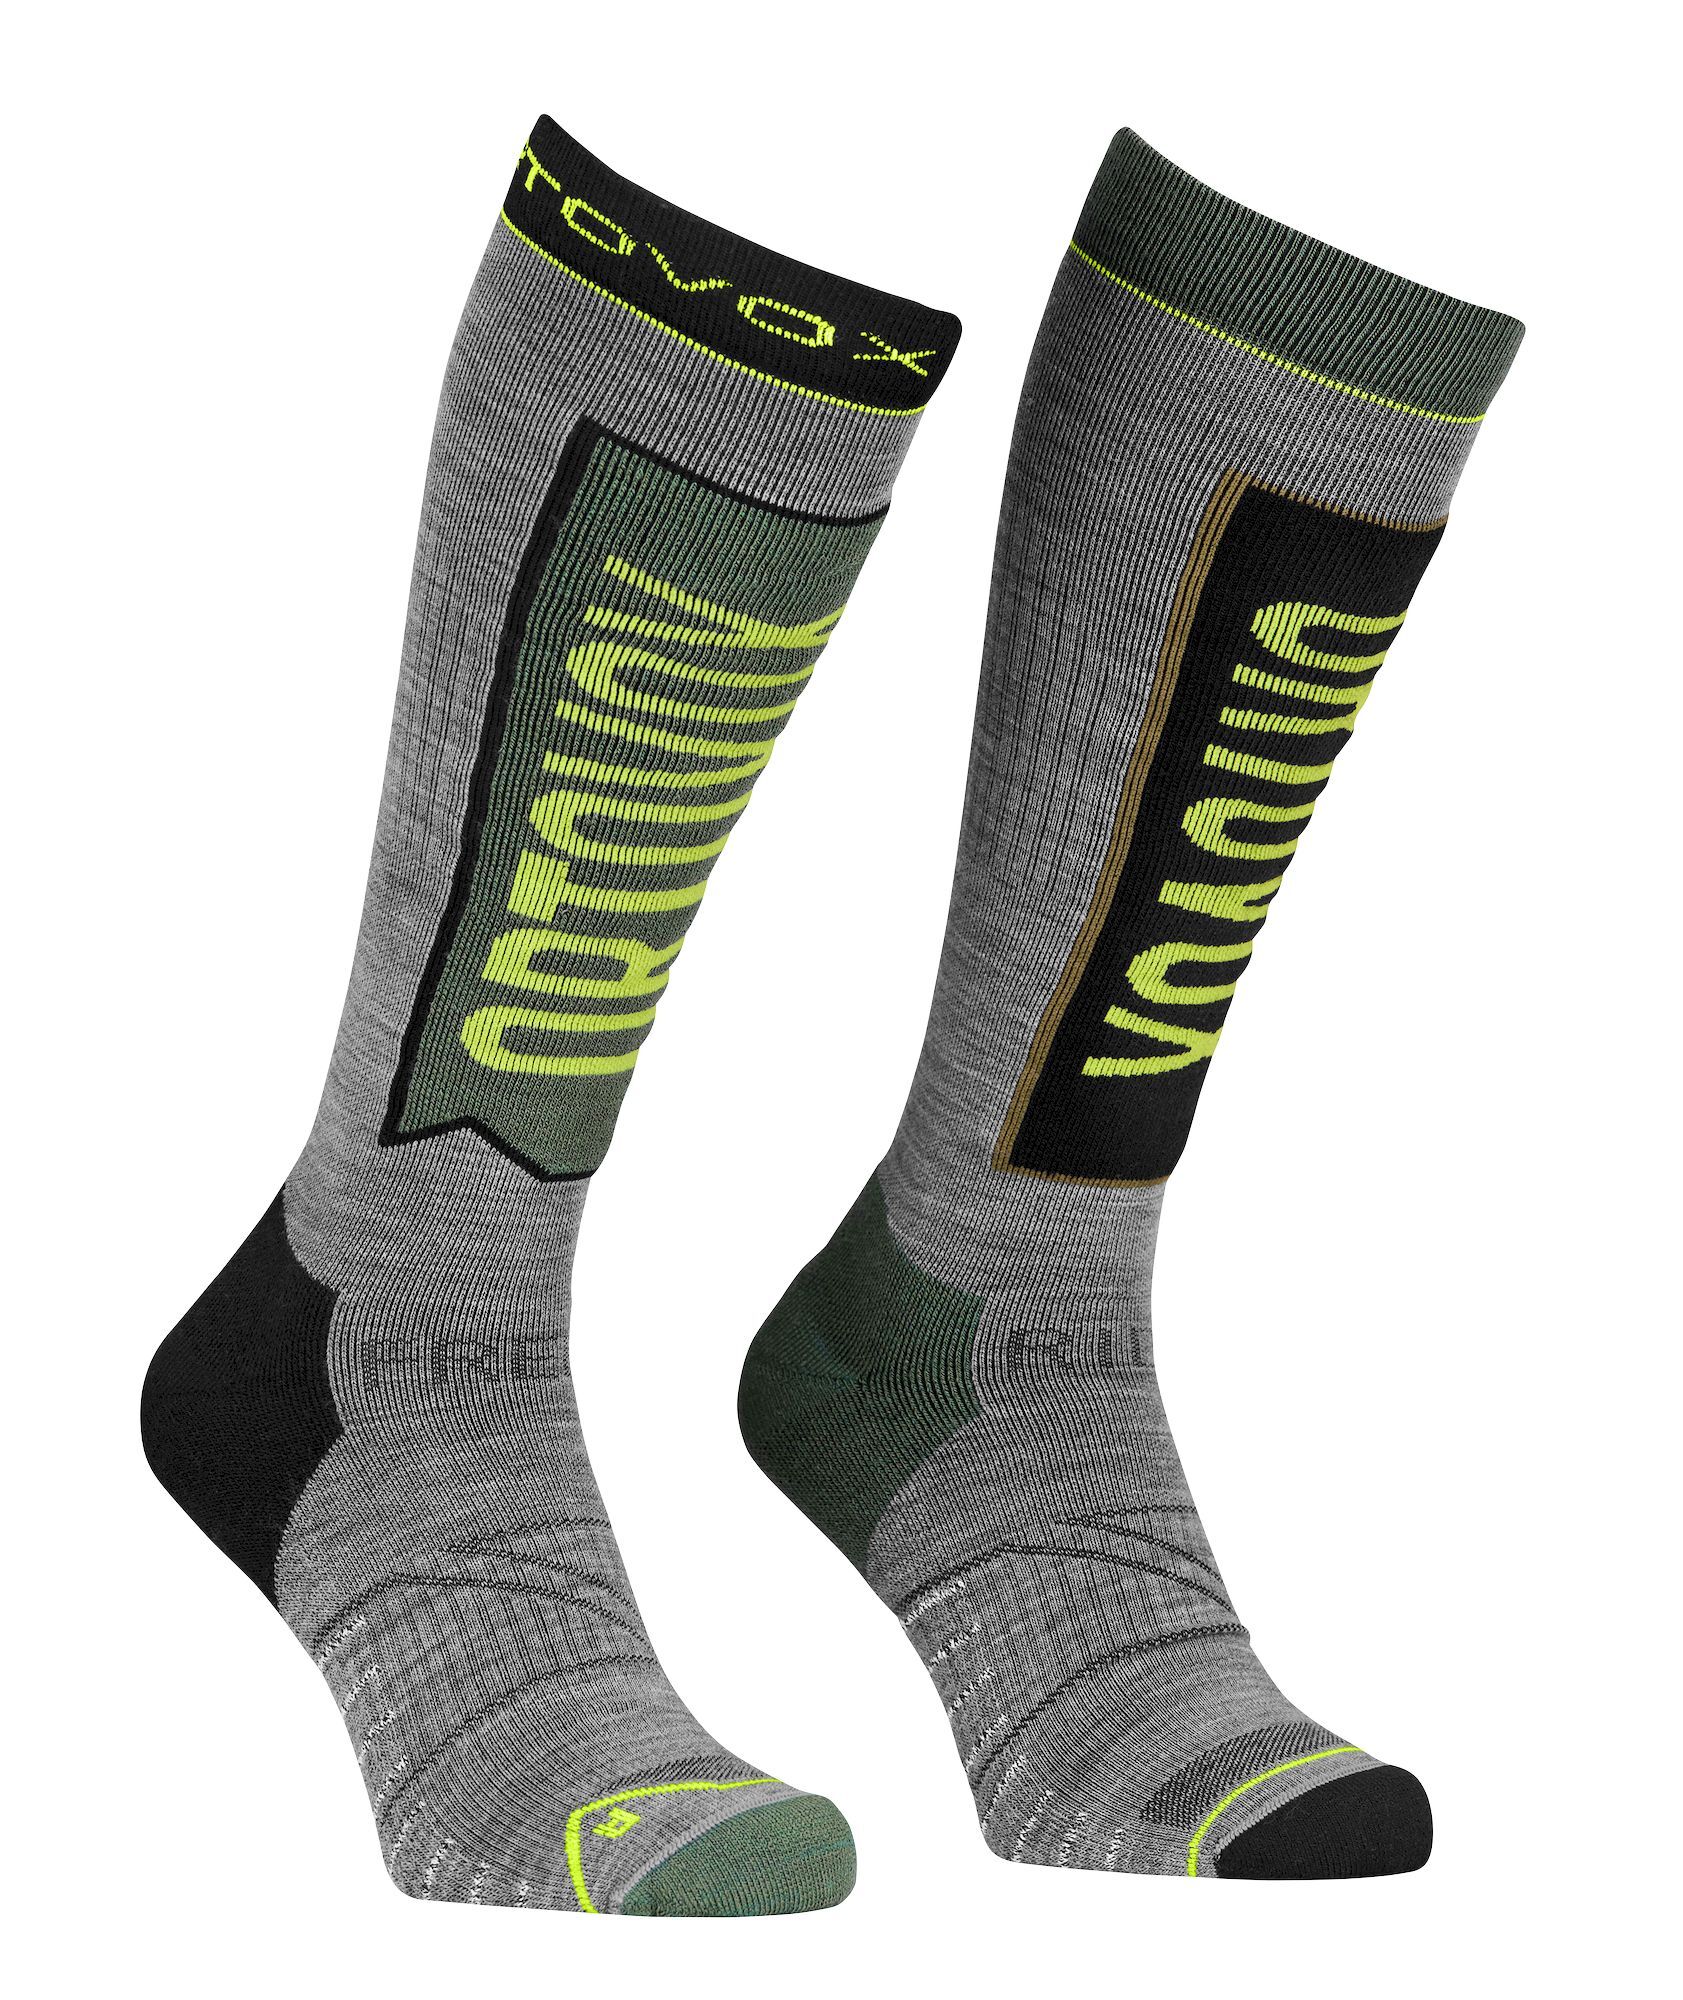 Ortovox Free Ride Long Socks - Calze da sci - Uomo